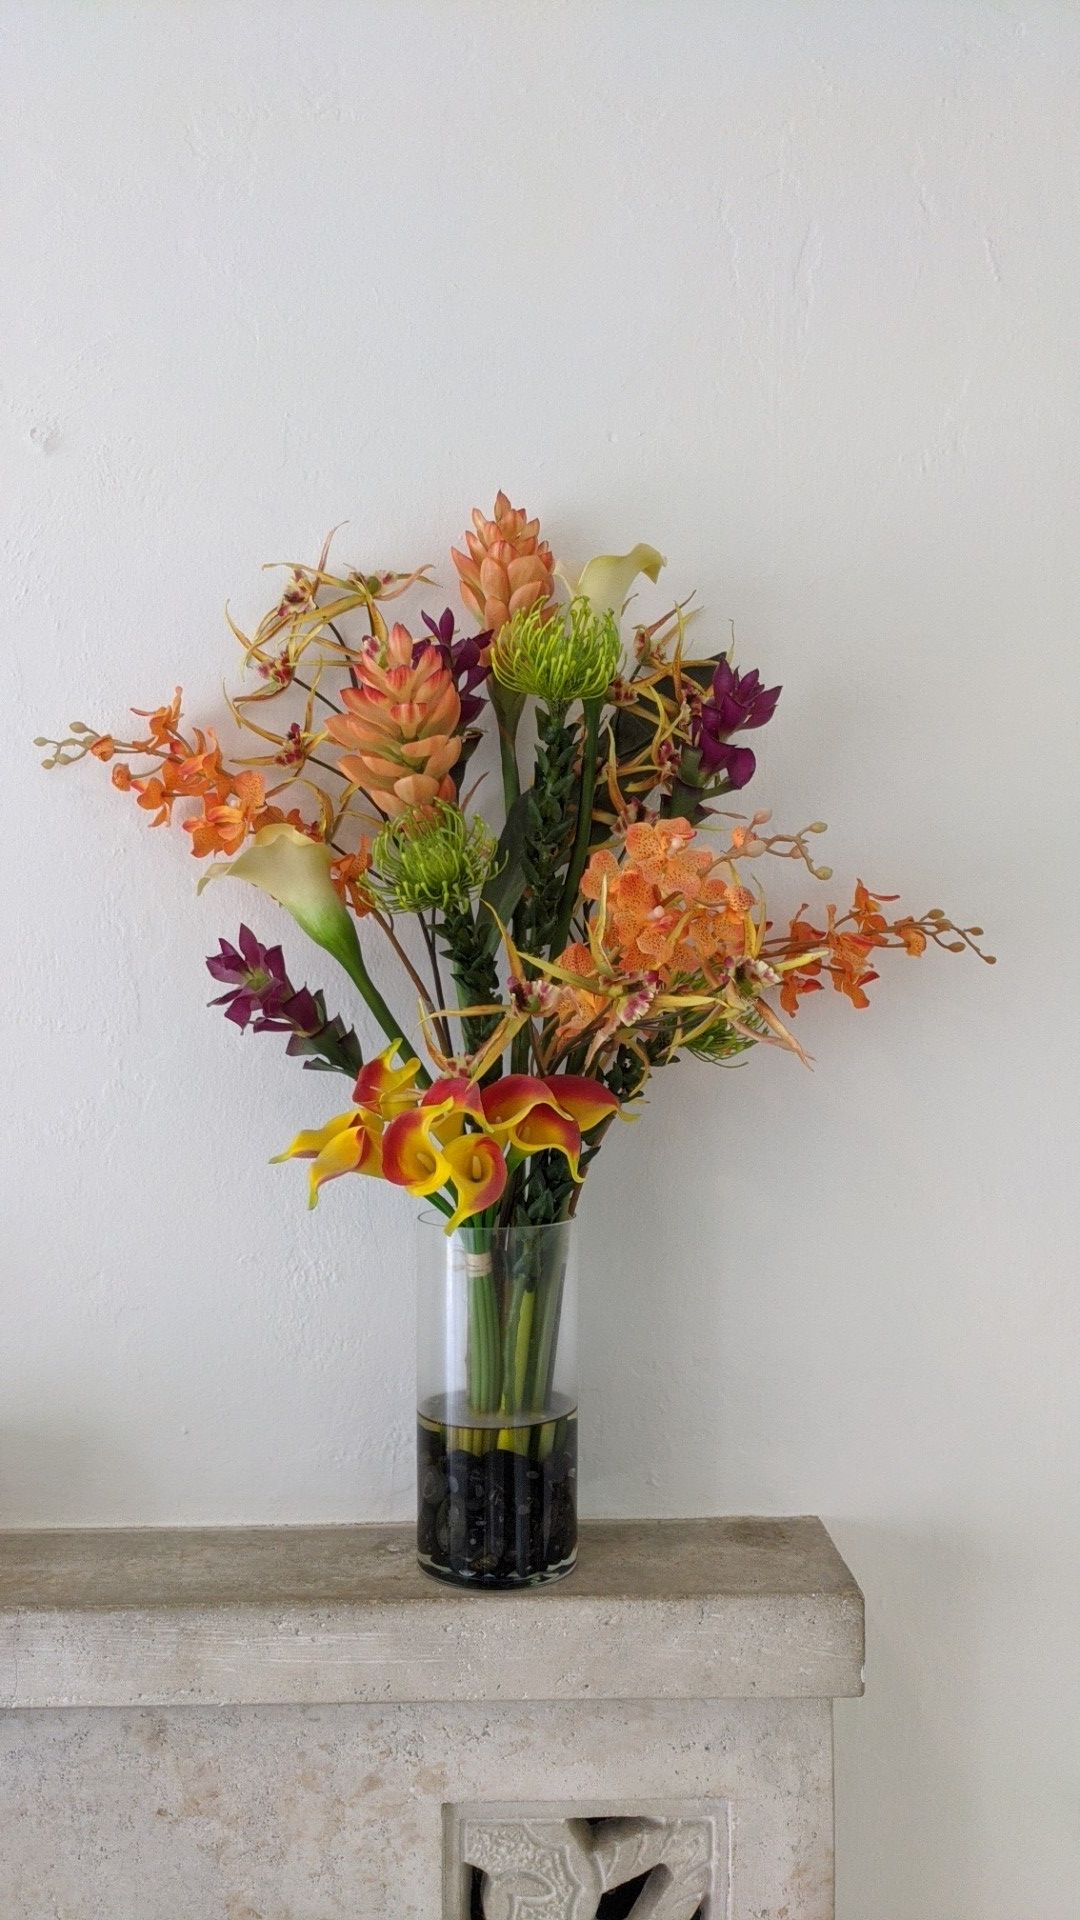 Faux Floral Arrangement Imitation Flowers Vase Included